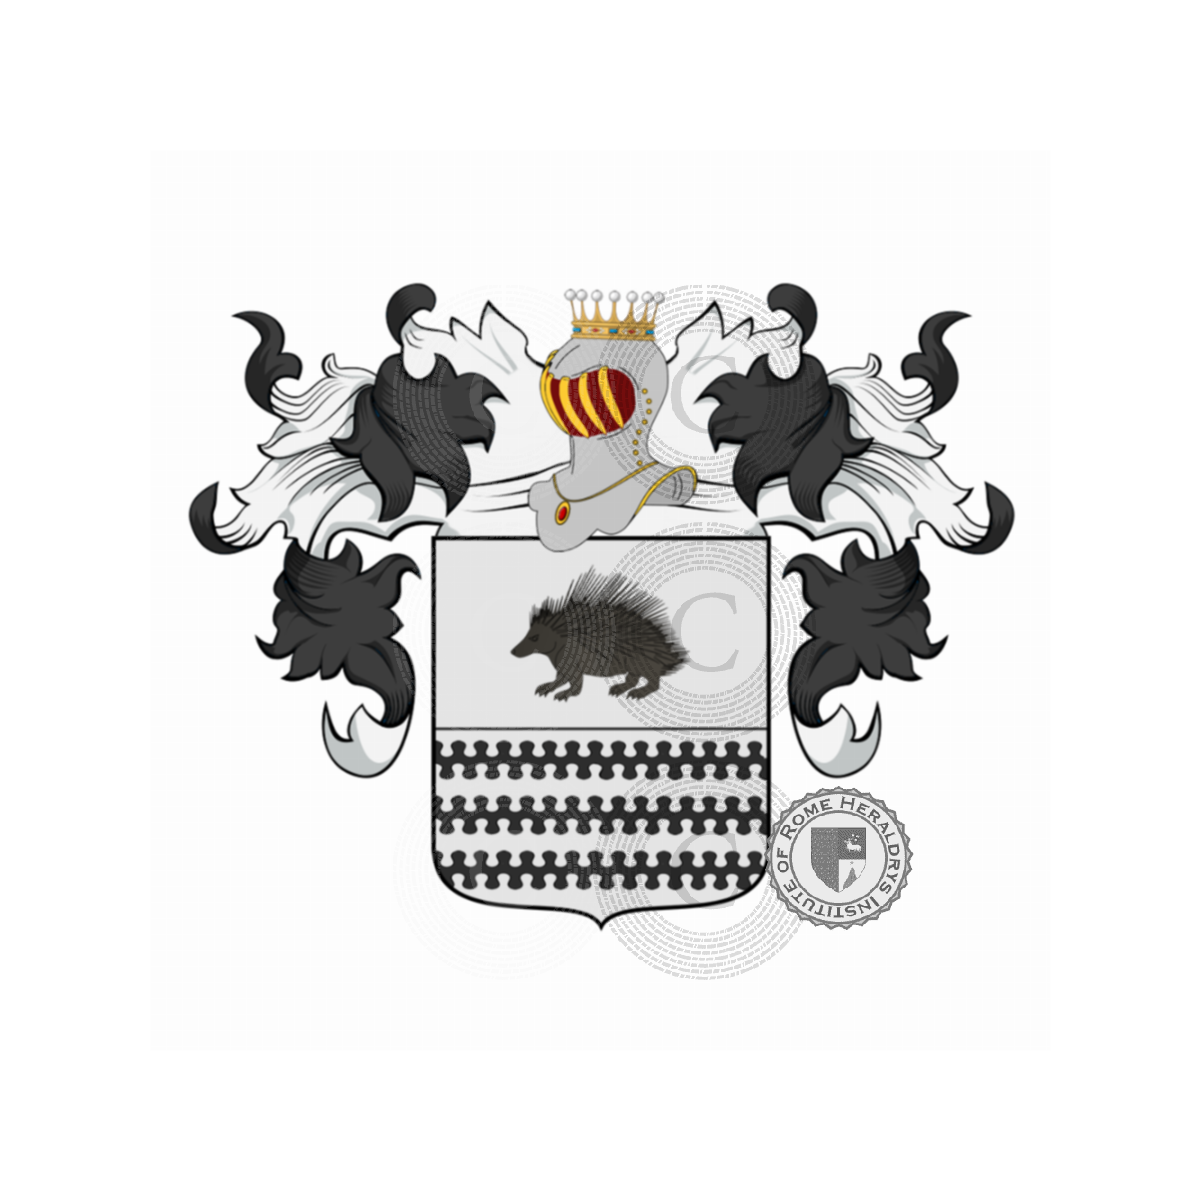 Wappen der FamilieRizzo, de Ritiis,Ricci,Riccio,Riccioli,Ritis,Rizzi,Rizzoli,Rizzolo